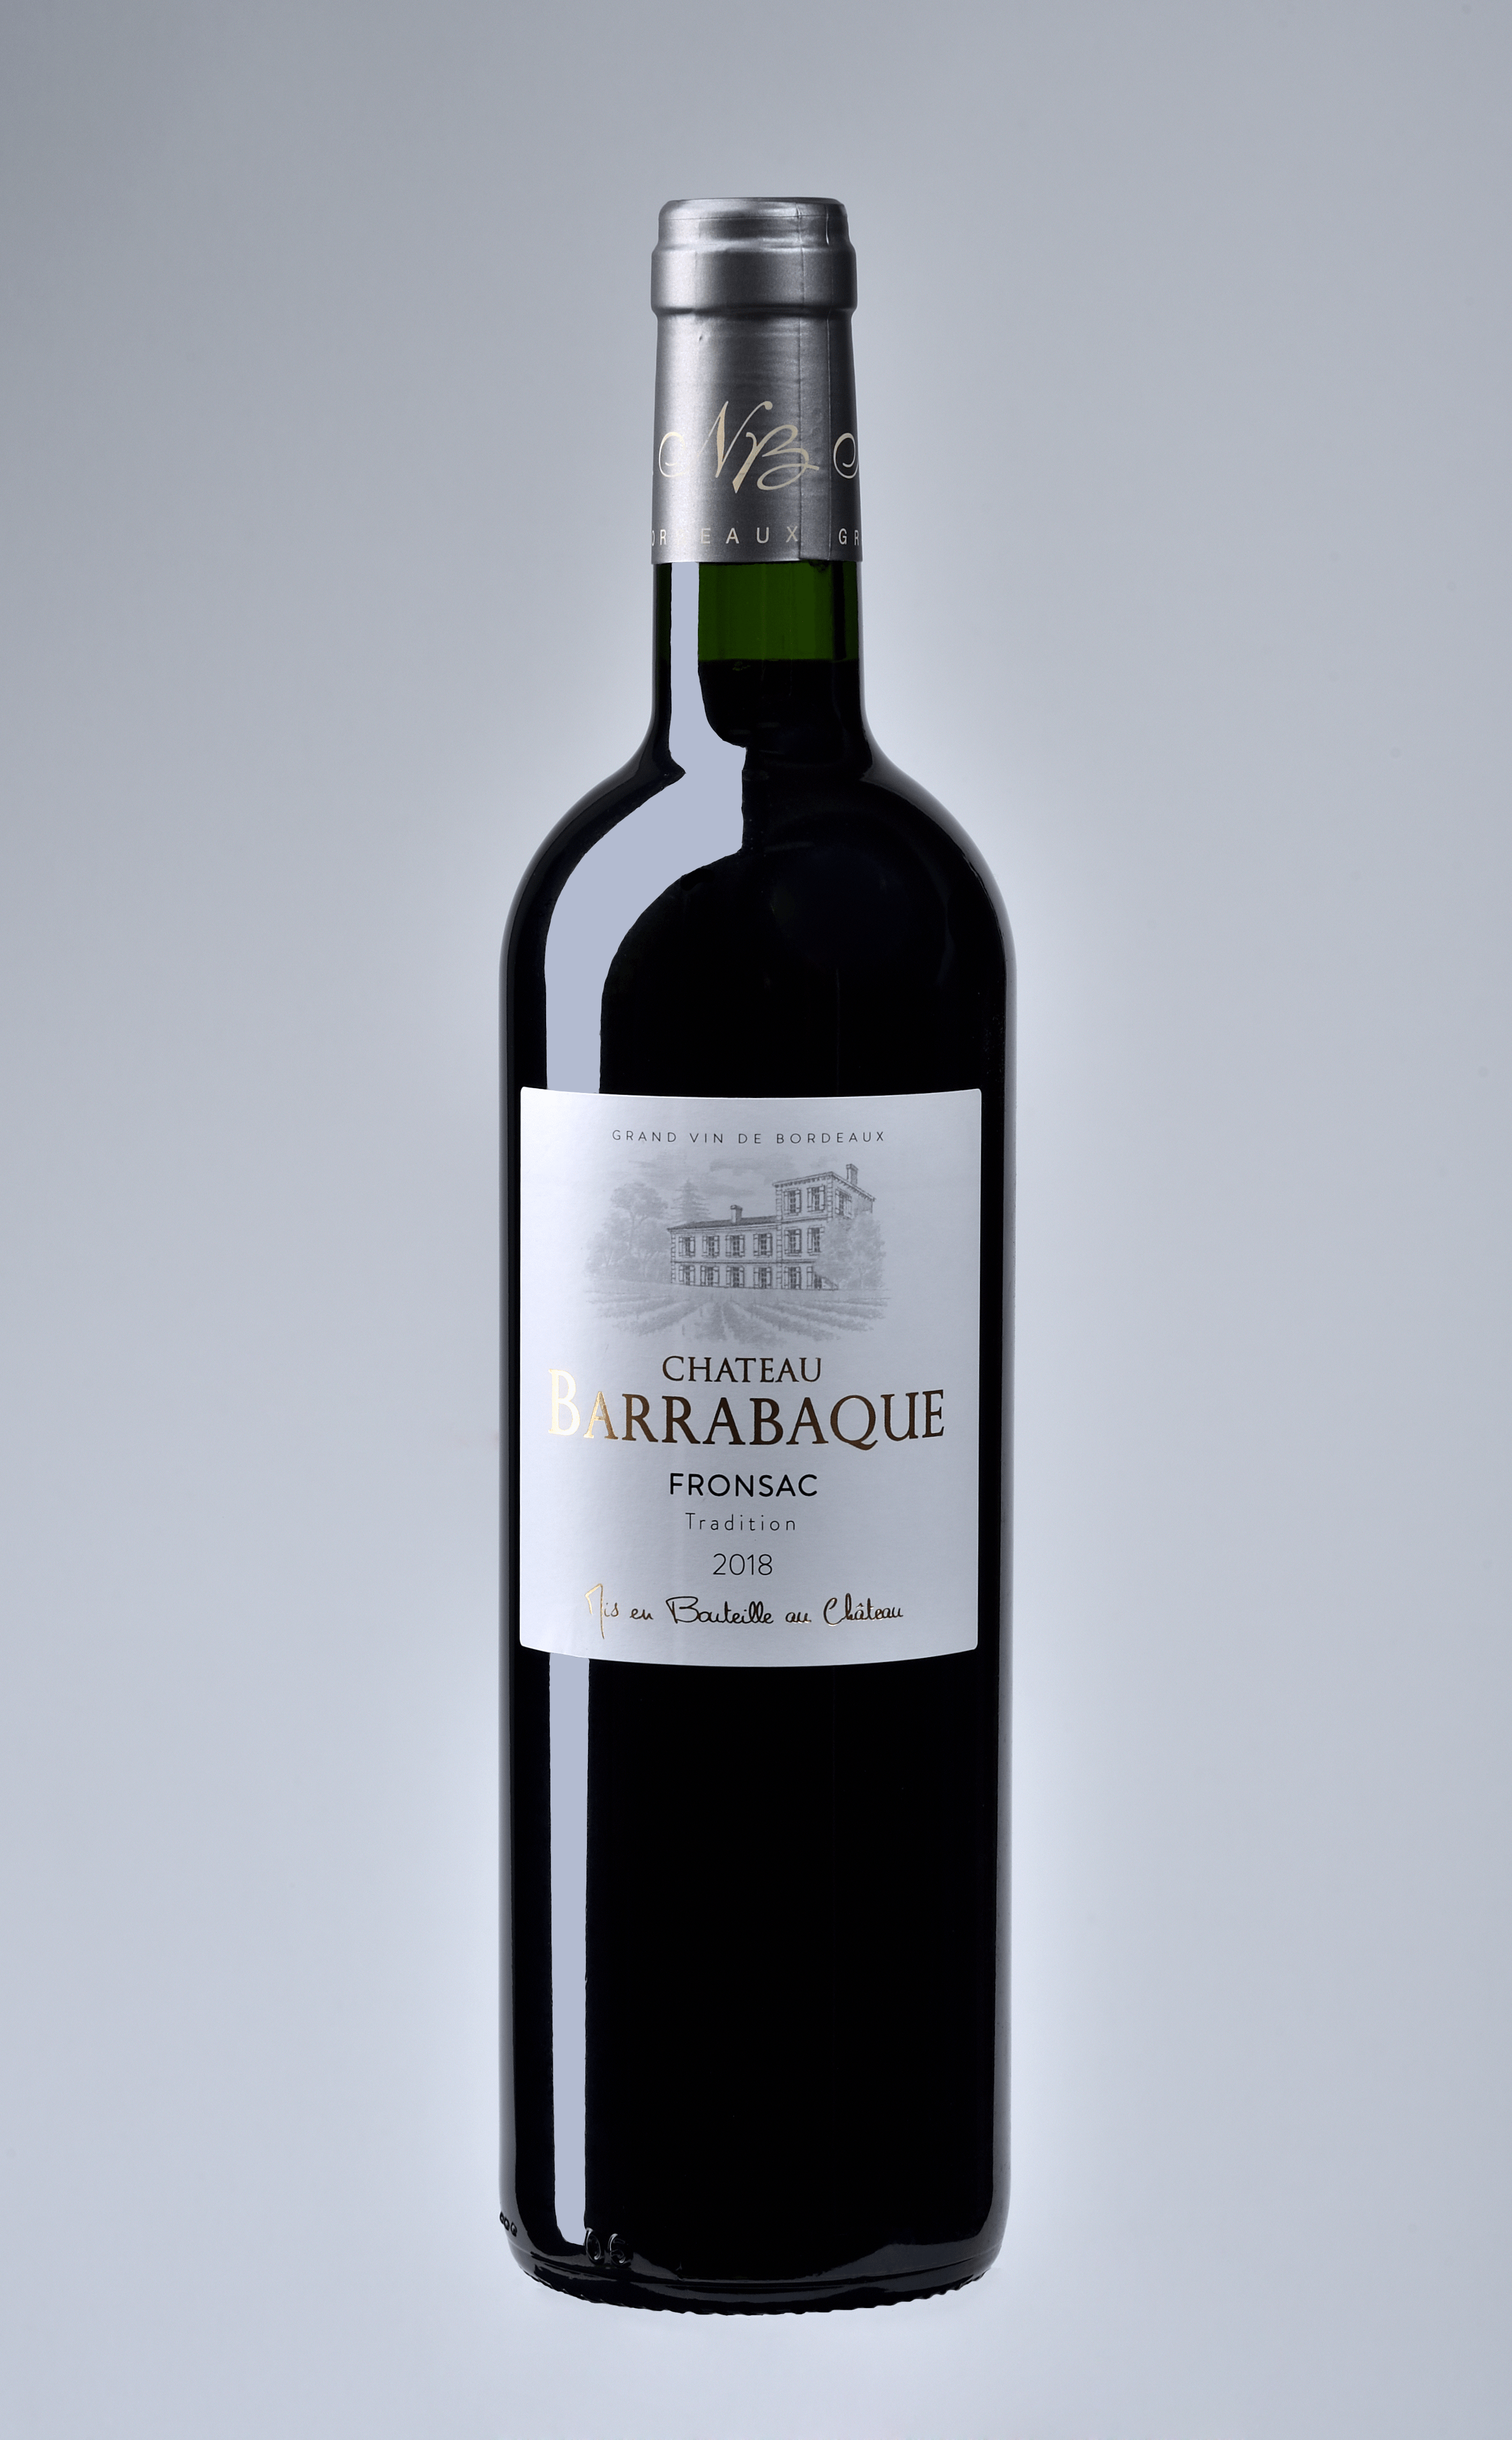 Château Barrabaque Tradition 2018 - Fronsac - Les vins de Bordeaux